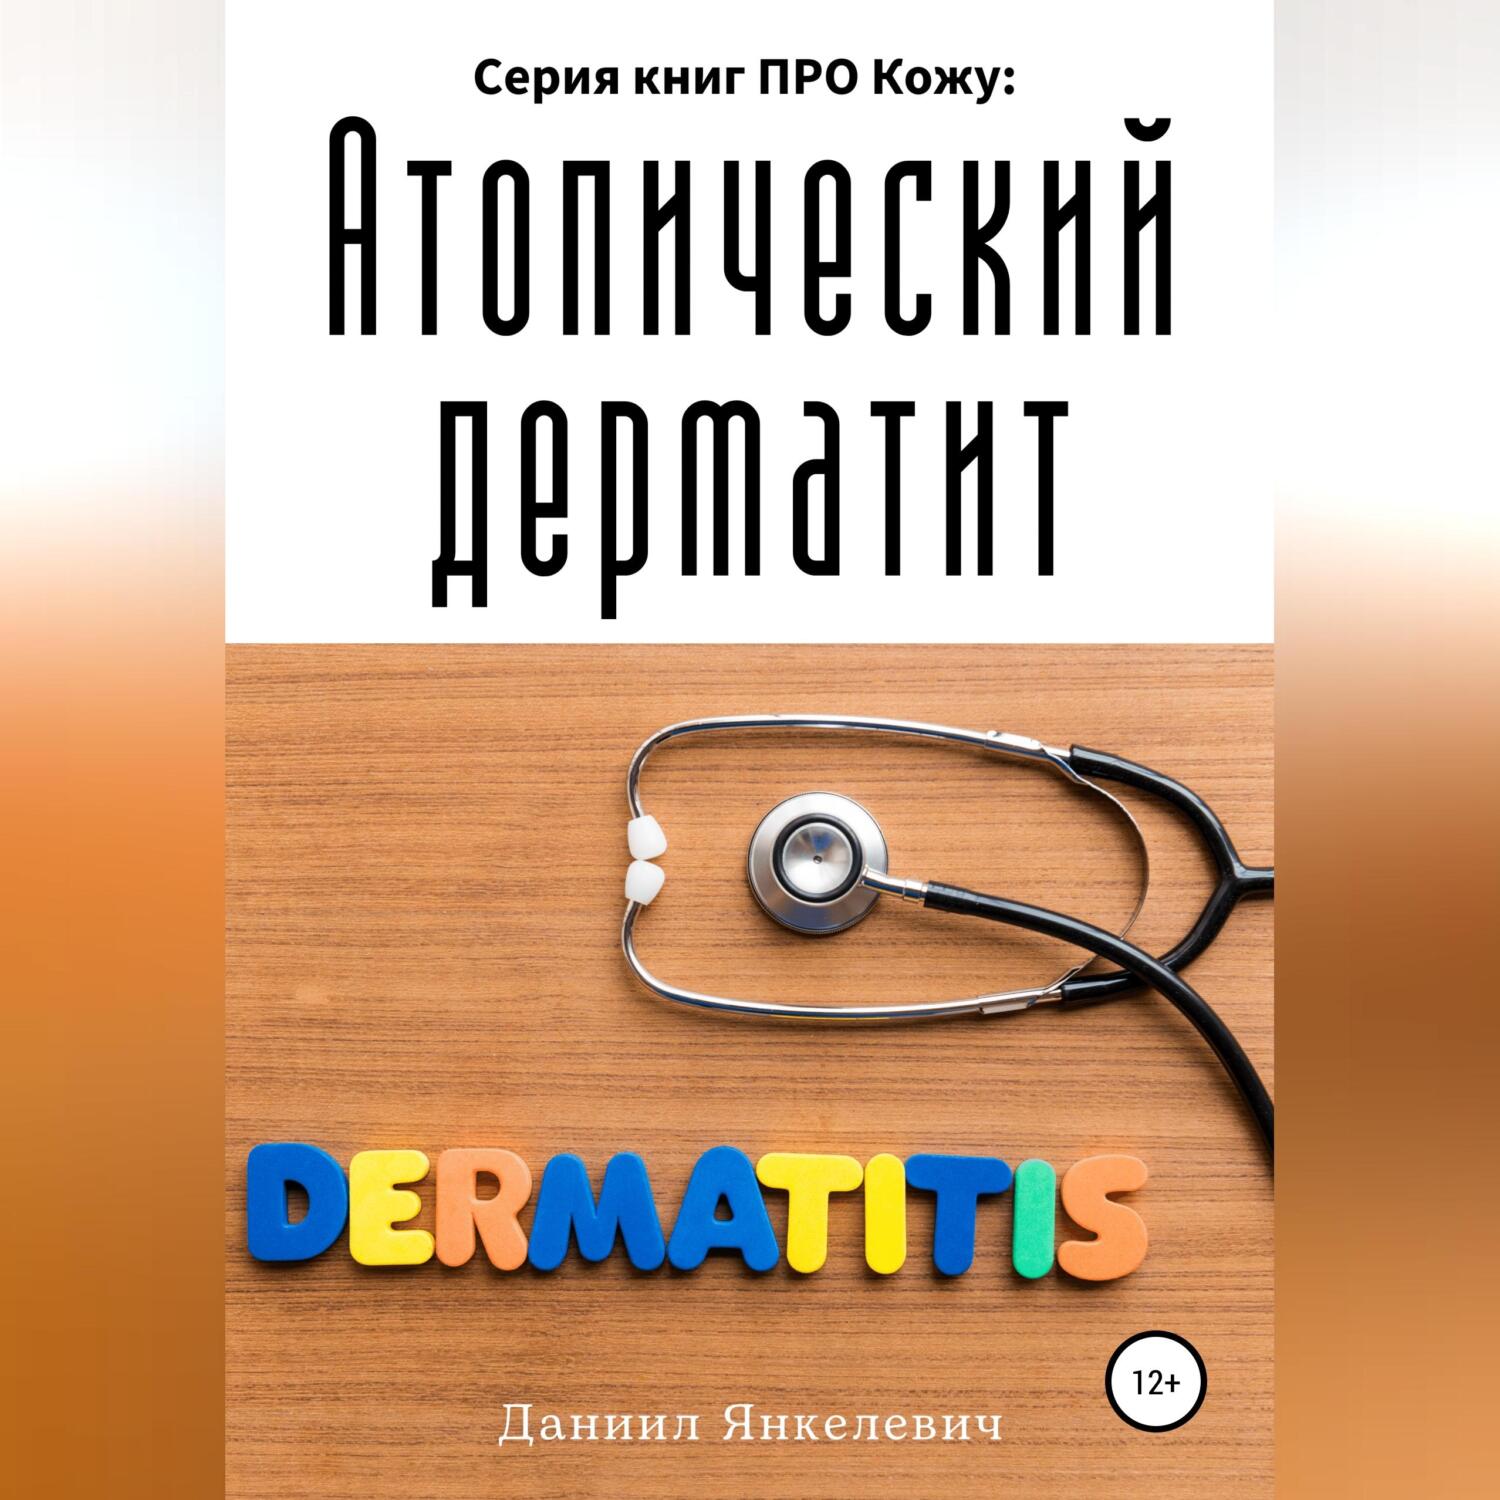 Серия книг ПРО Кожу: Атопический дерматит